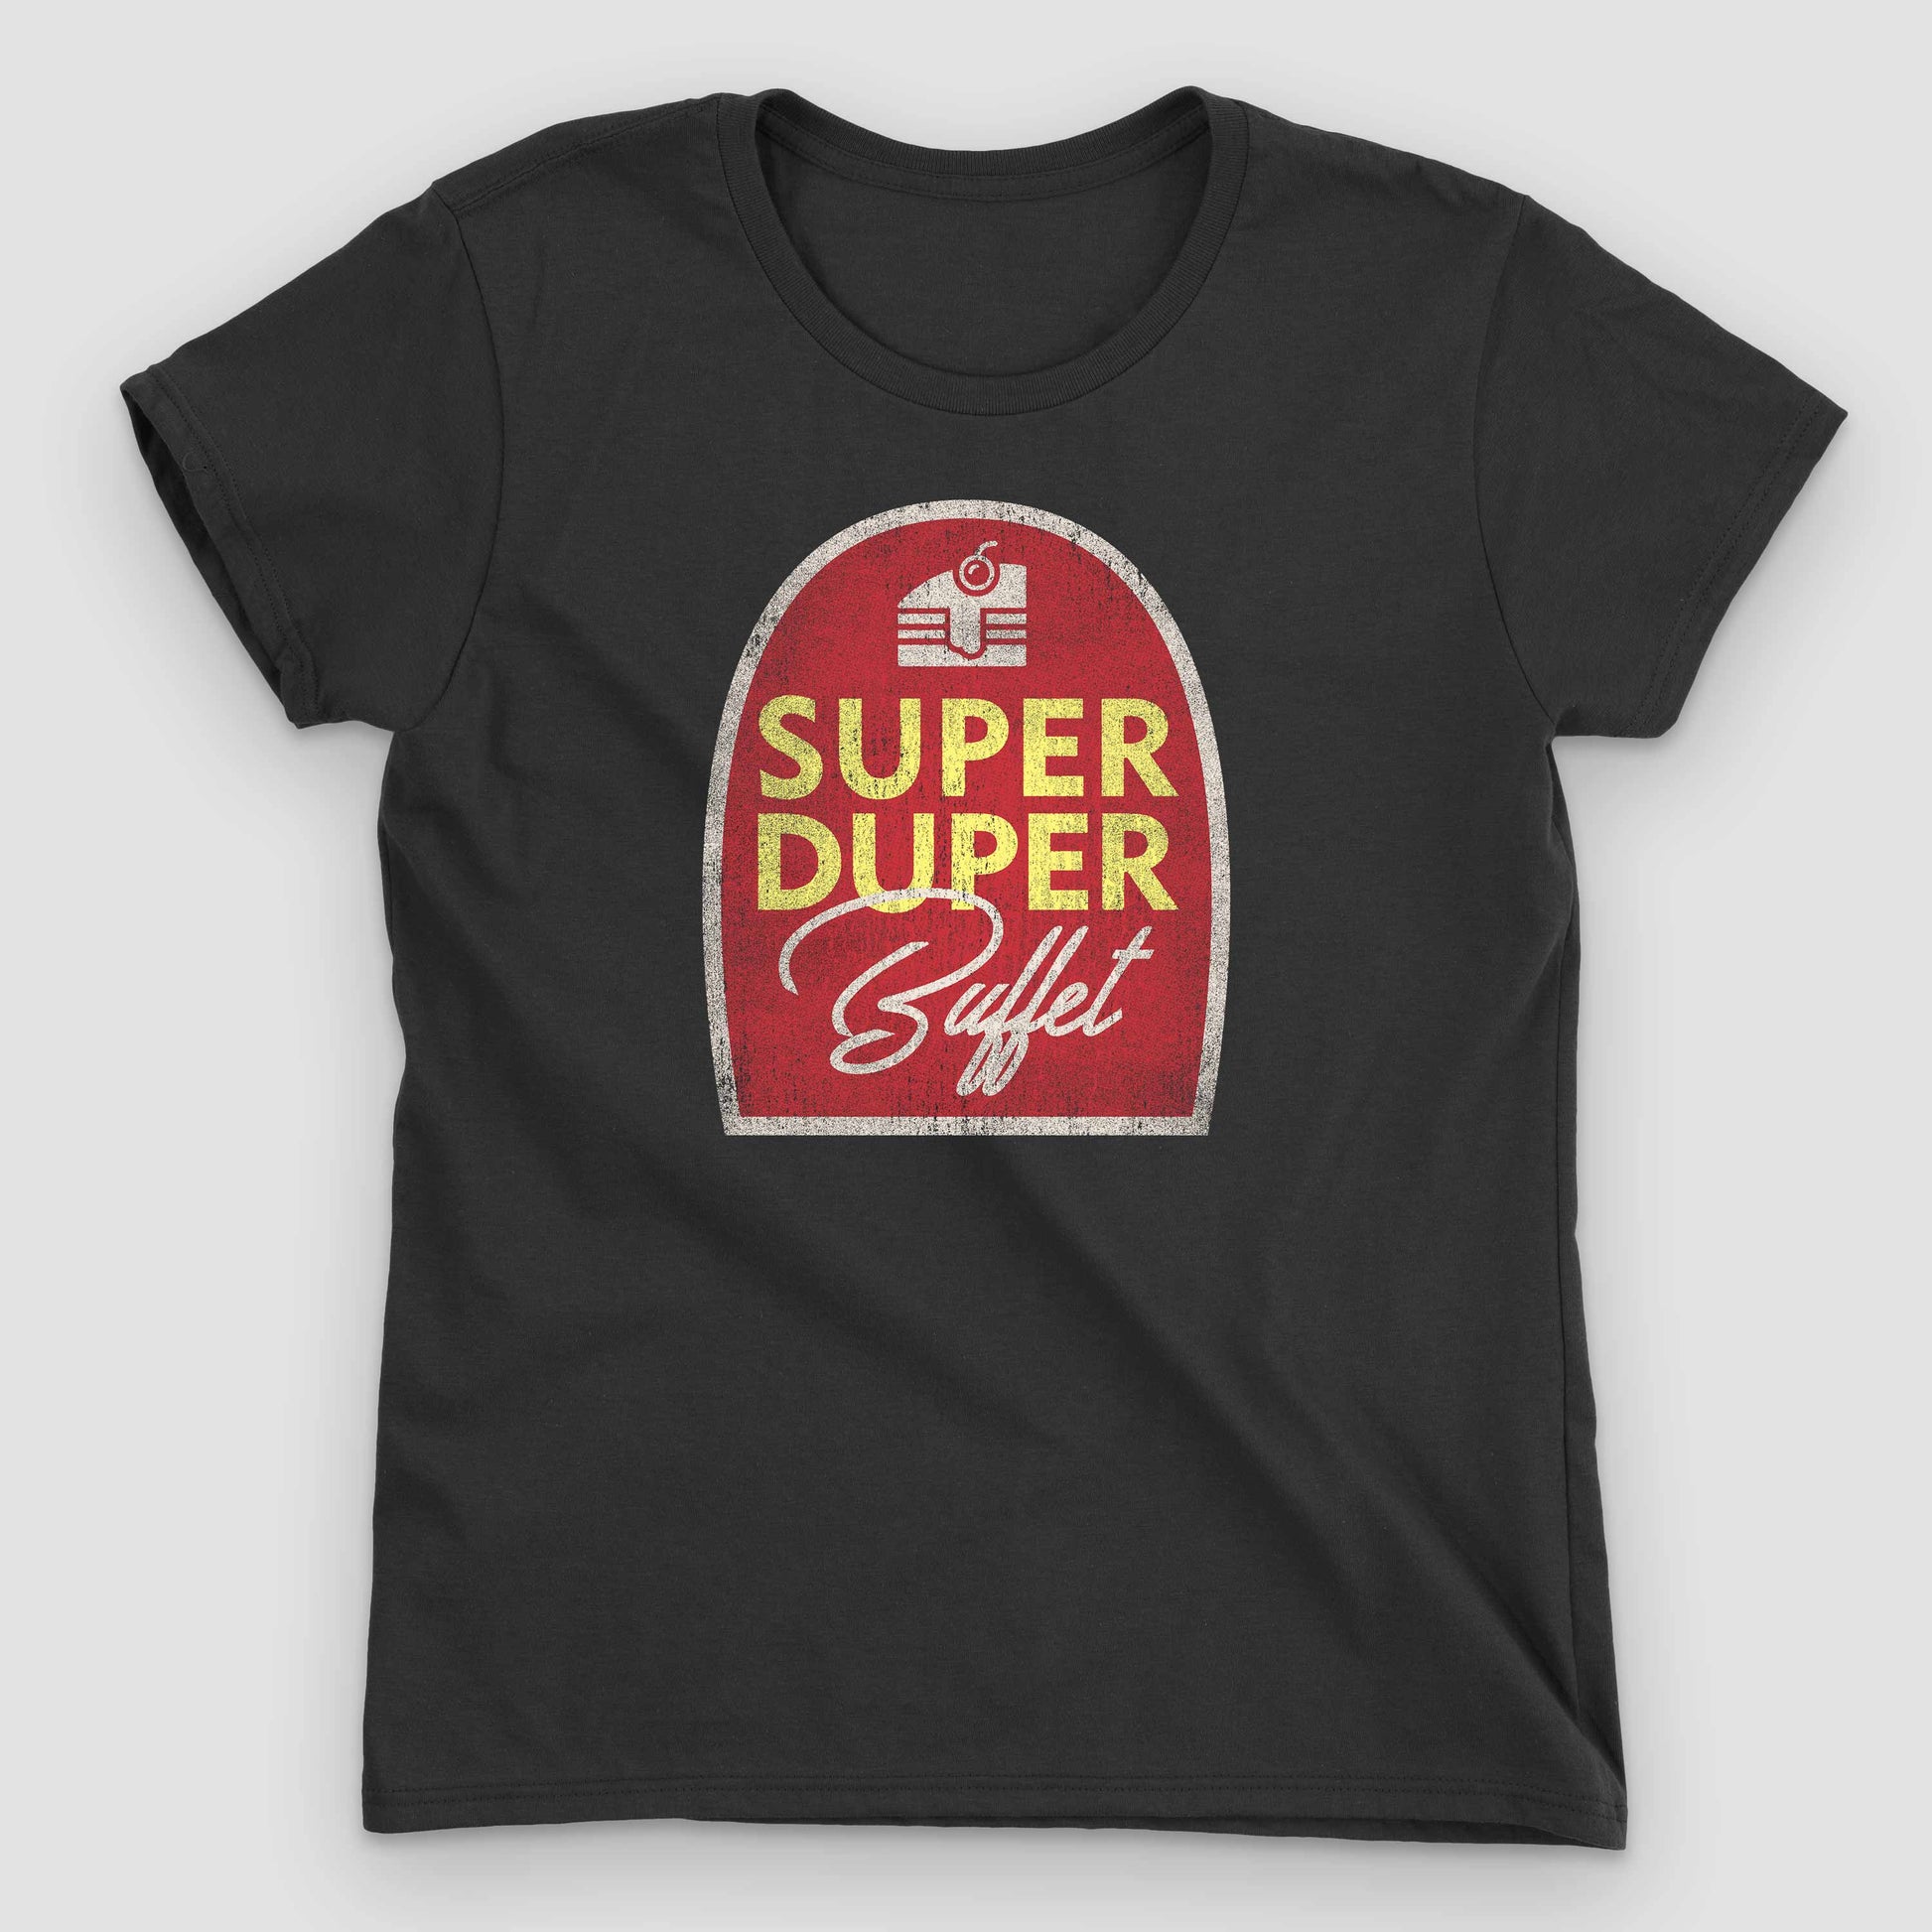 Black Super Duper Buffet Women's T-Shirt by Snaxtime